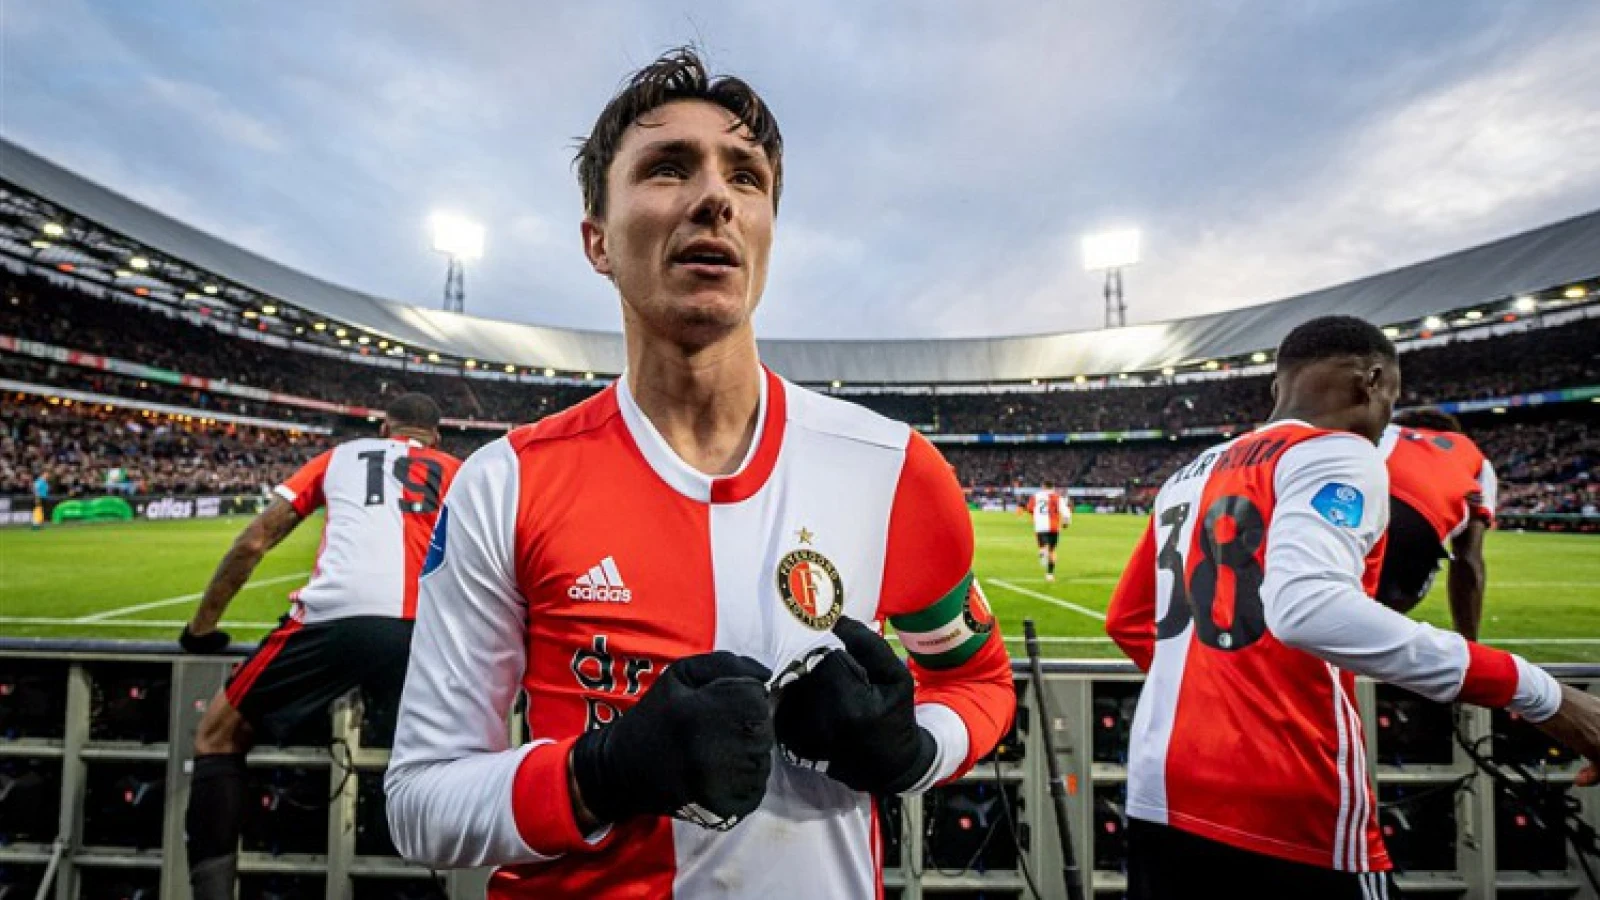 VIDEO | Top 12 goals - Feyenoord vs. PSV